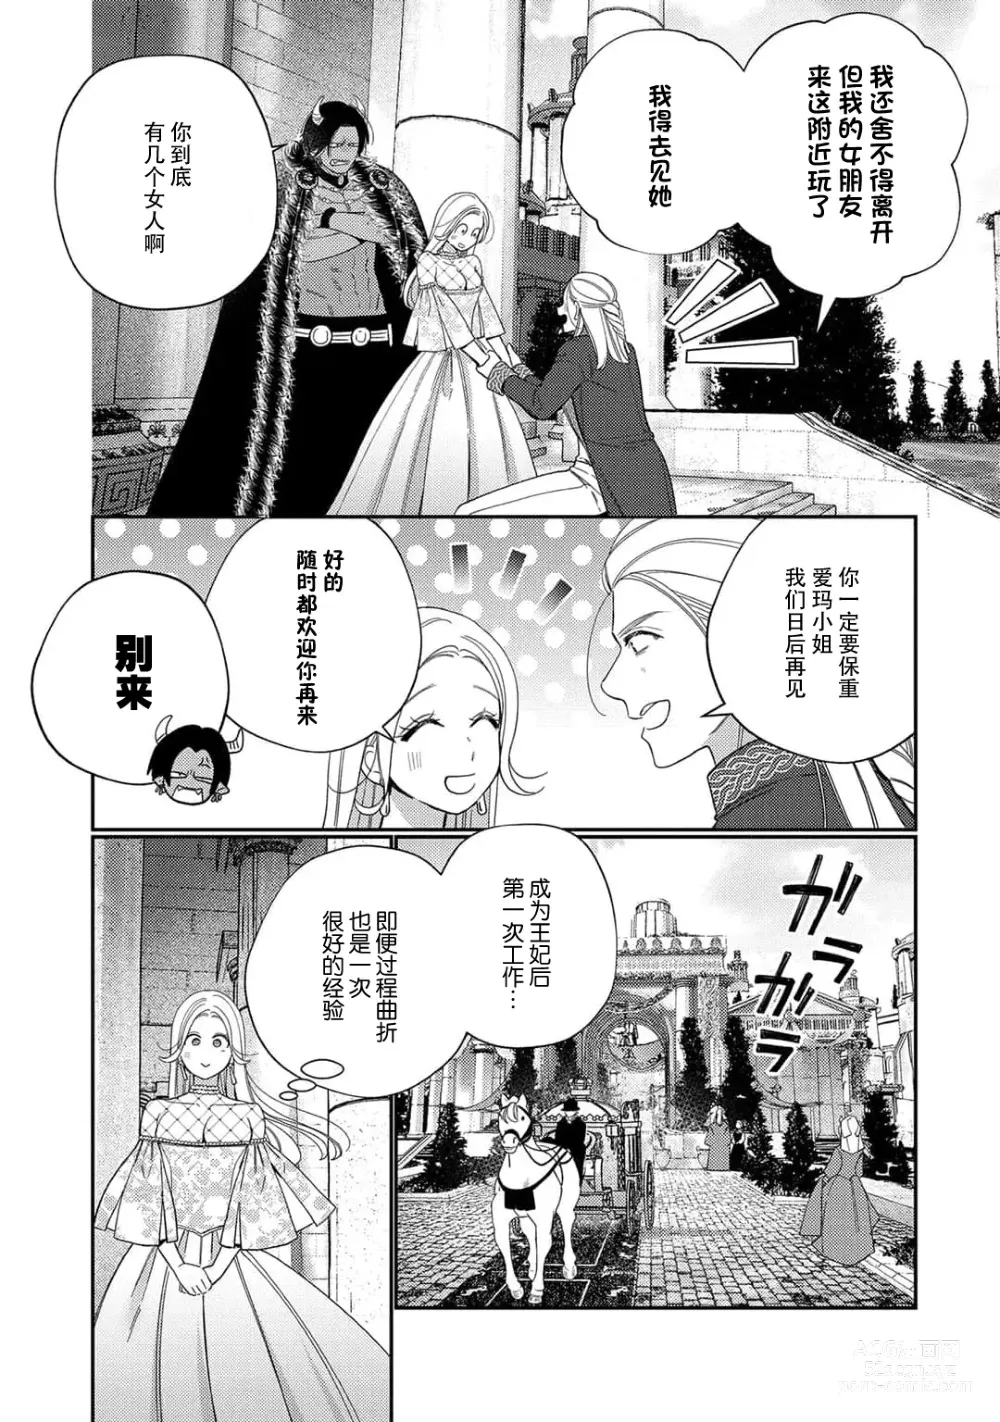 Page 210 of manga 转生成为恶役大小姐，迎接不H就会死的命运~与敌国国王的笼络联姻~ 1-5